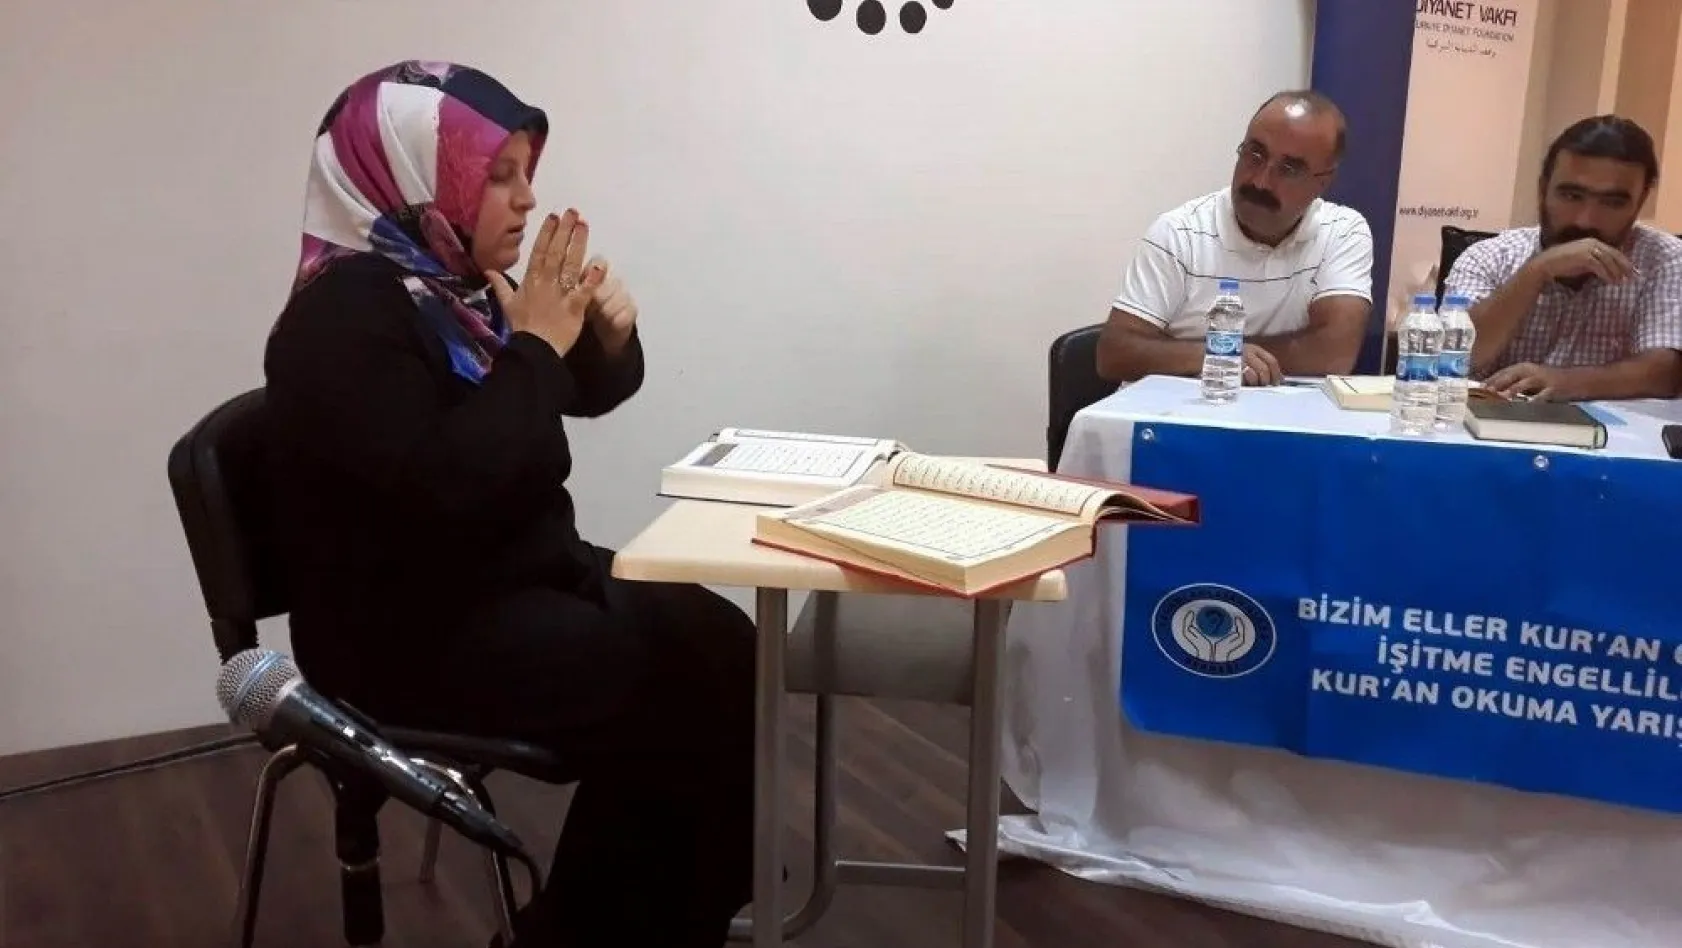 İşitme engelliler Kur'an okuma yarışmasına buruk bir heyecanla katıldı
